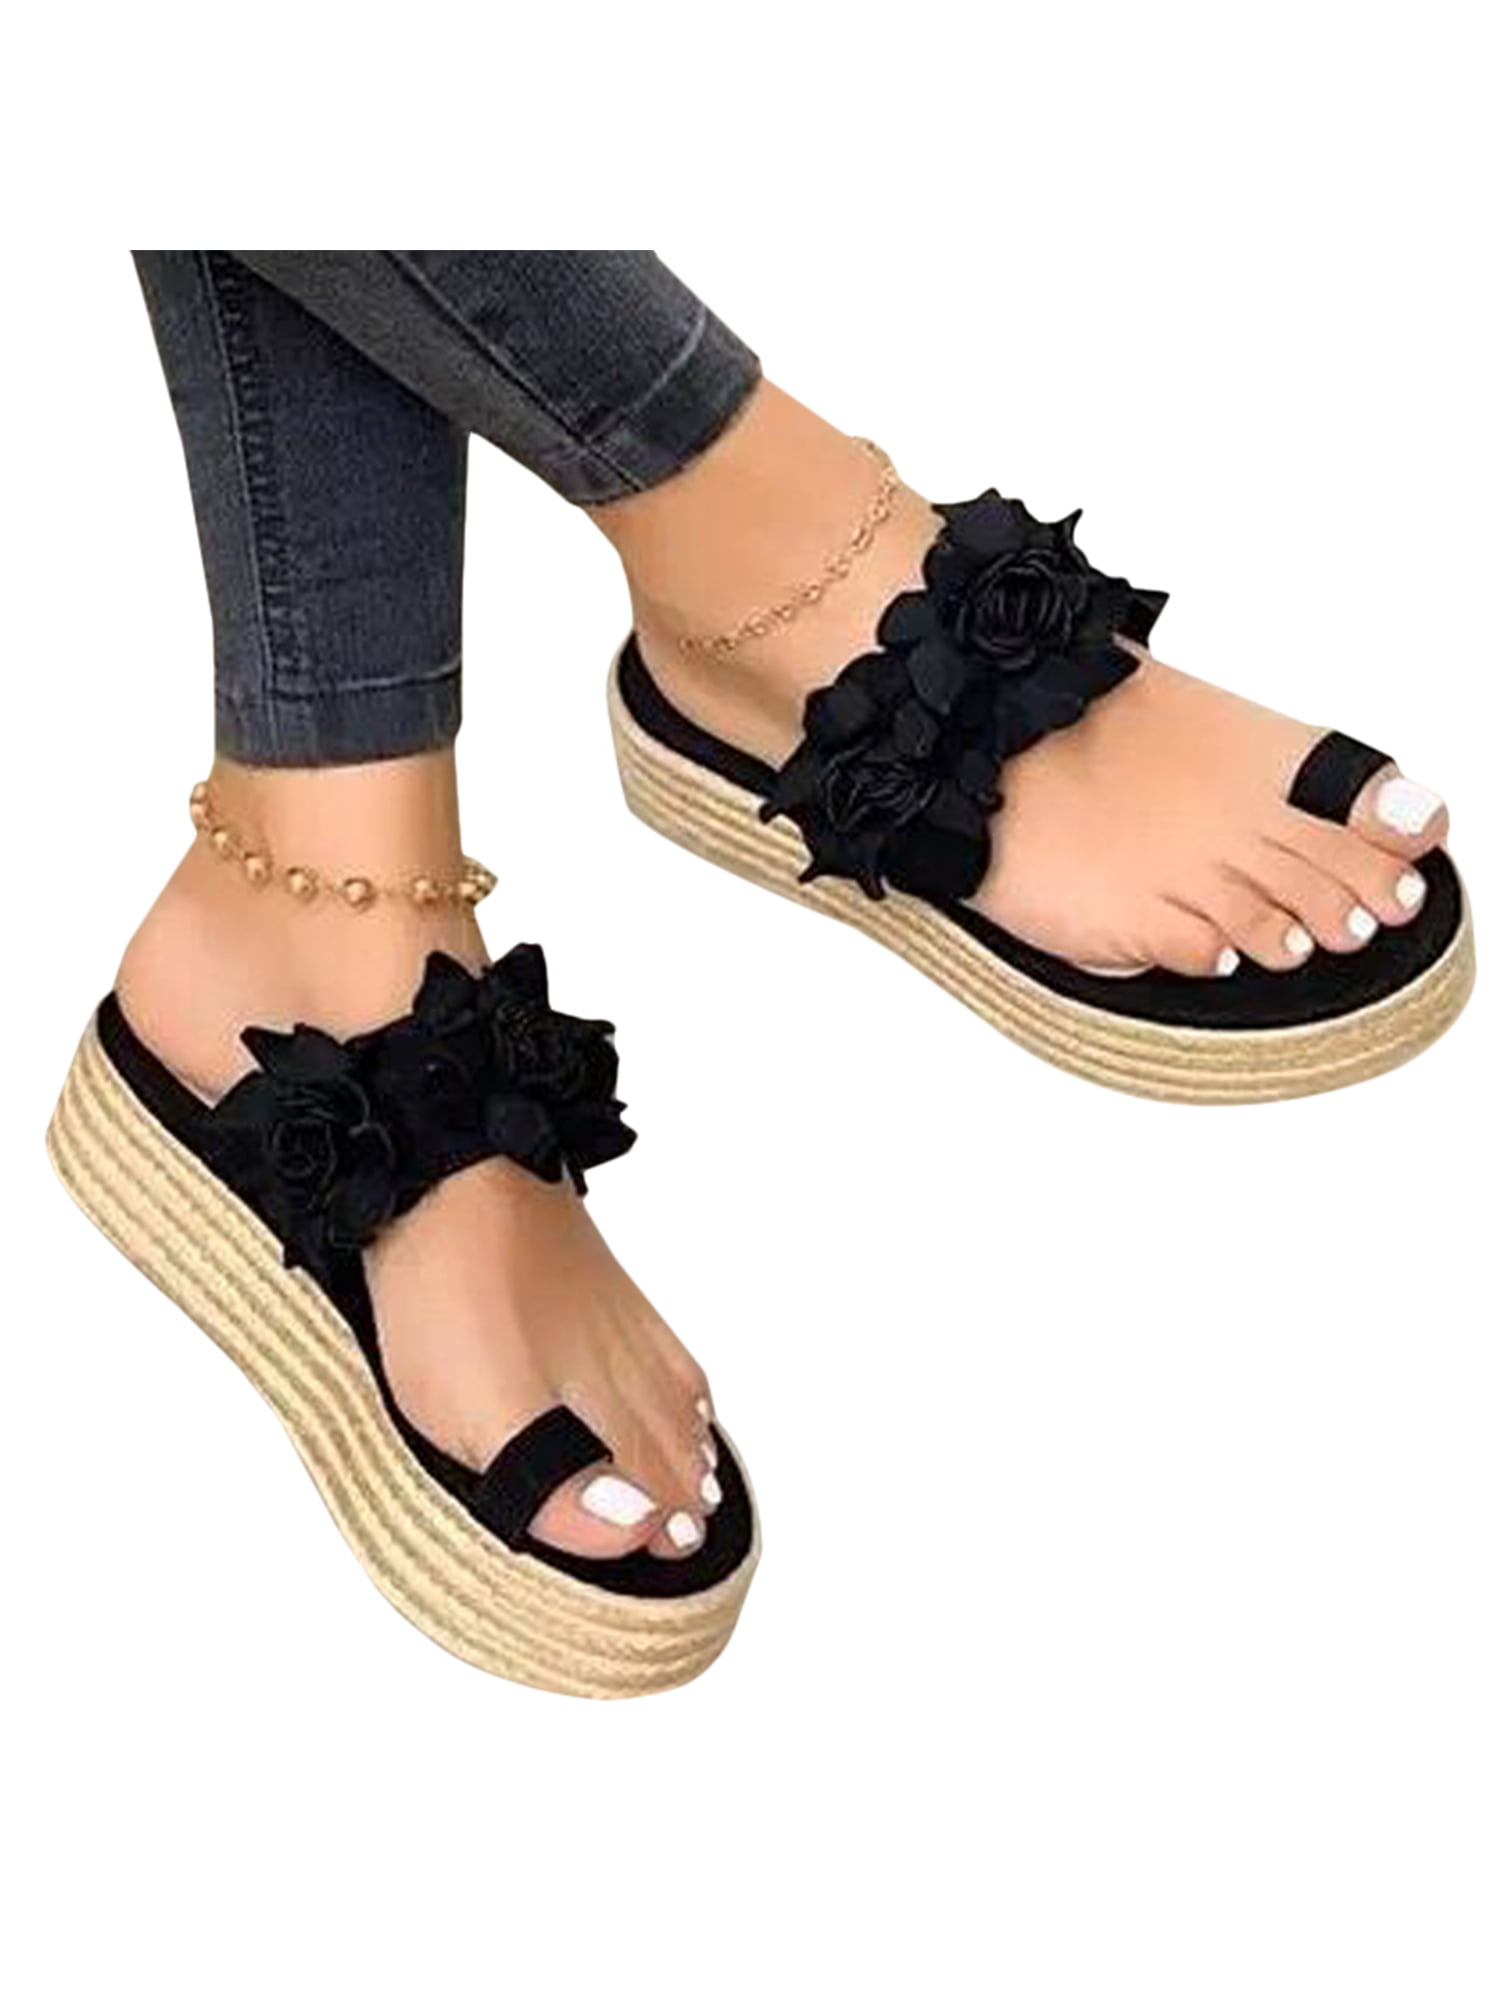 Mens Summer Beach Slingbacks Sandals Slippers Shoes Toe Ring Non-slip Walking D